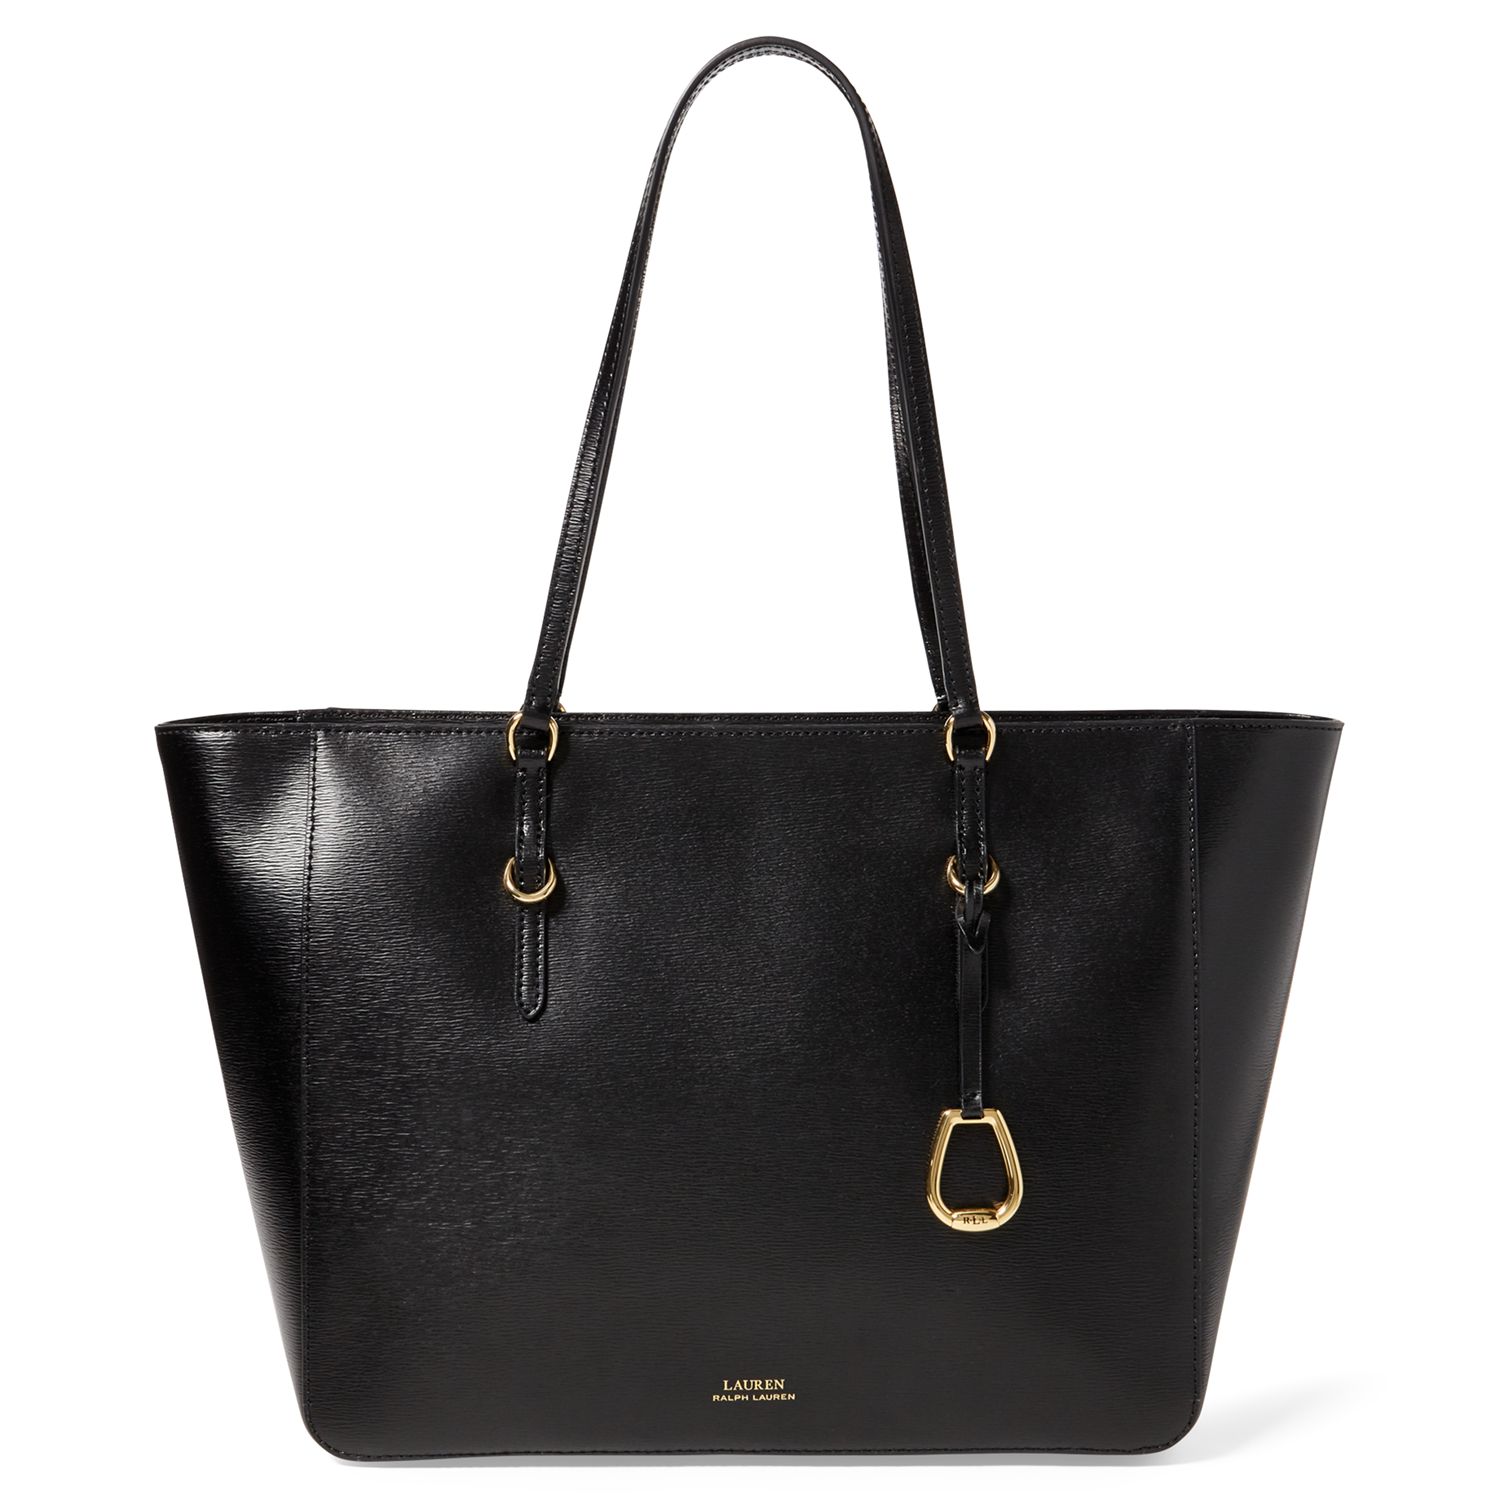 Lauren Ralph Lauren Saffiano Leather Tote Bag, Black